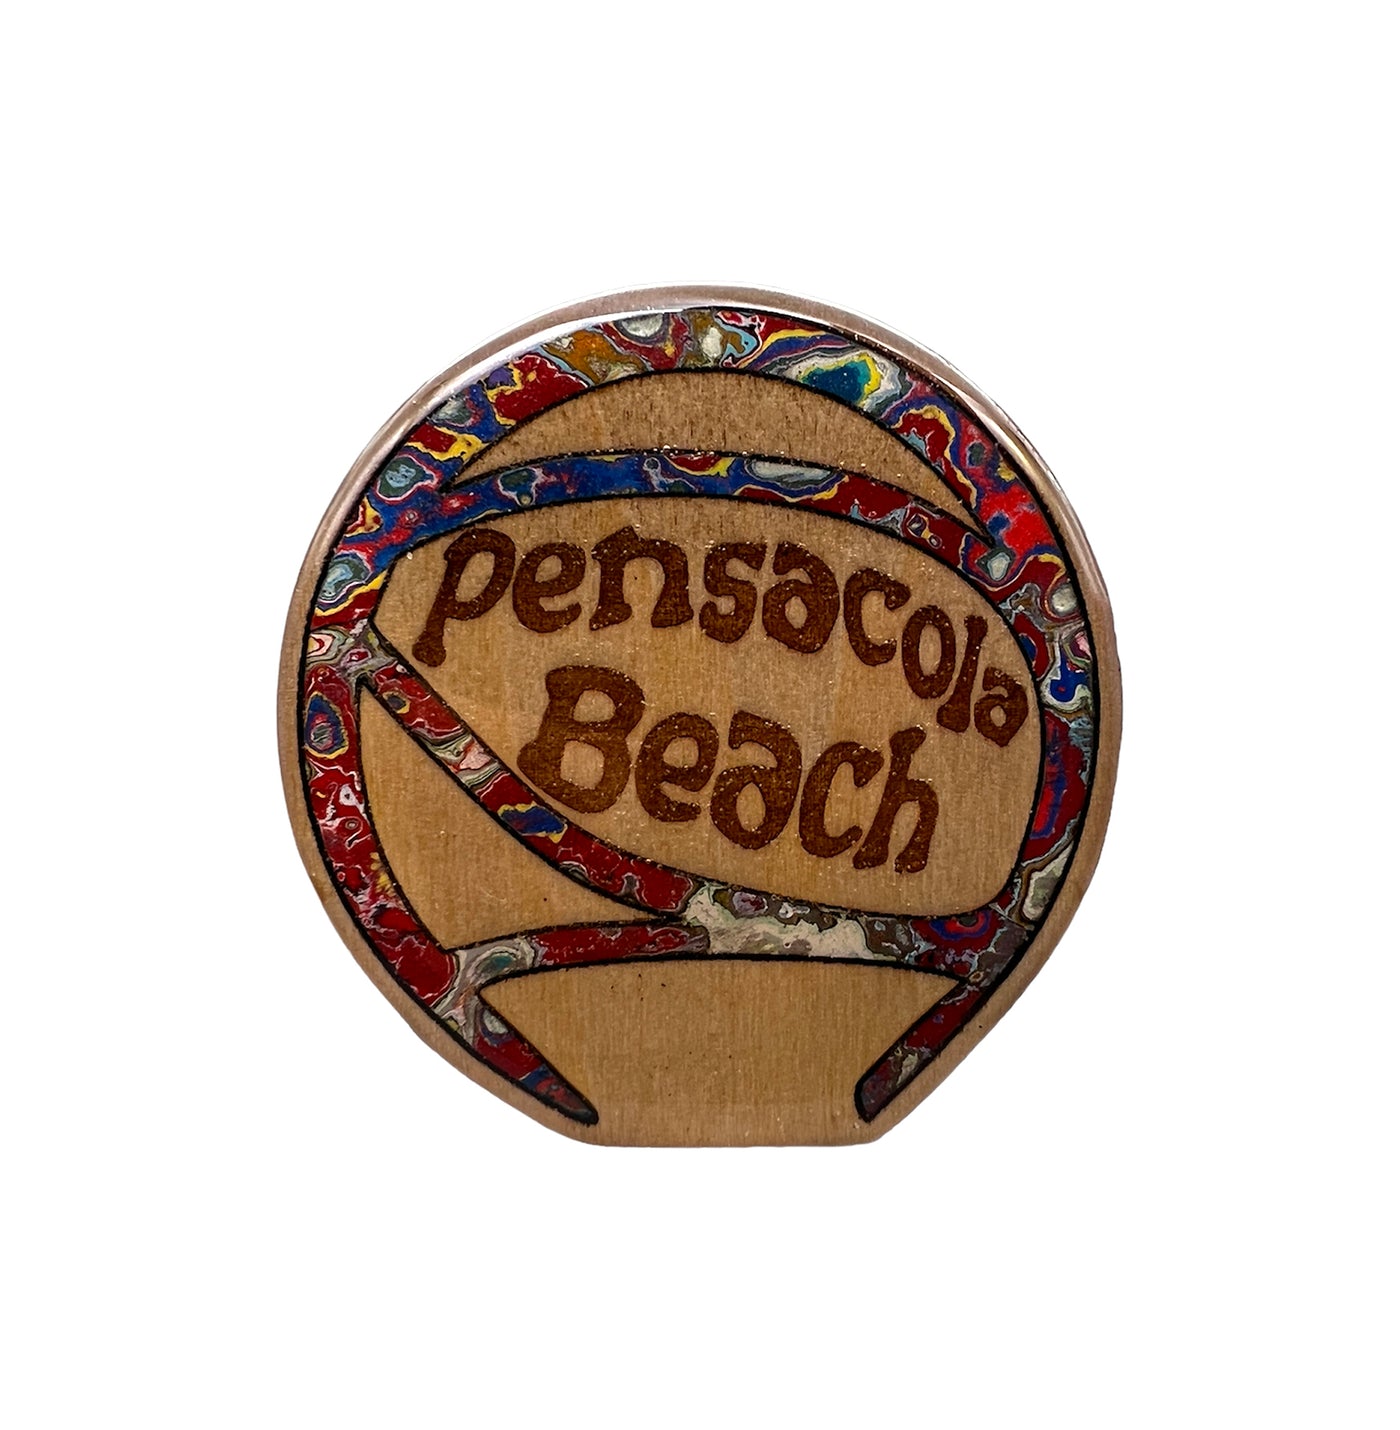 Pensacola Beach Ball - Magnet